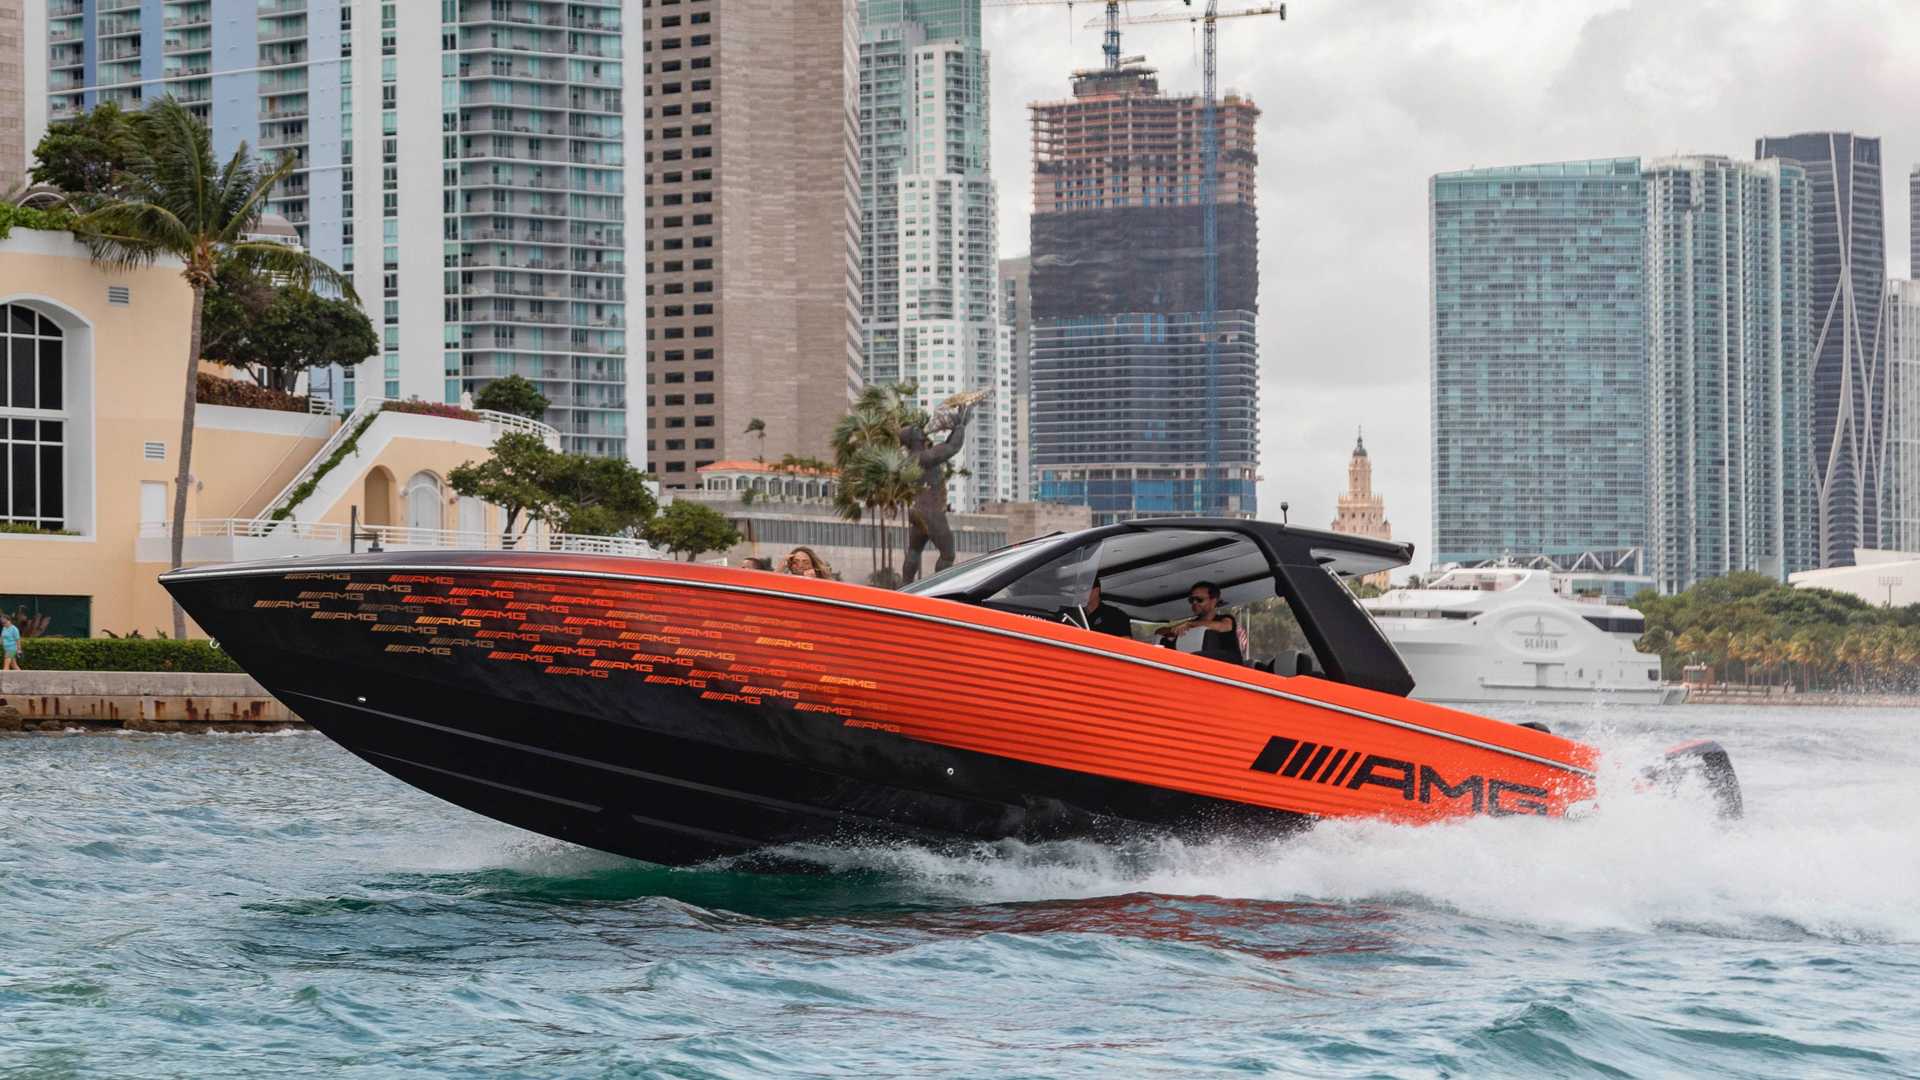 نمای جلو قایق پرسرعت مرسدس آ ام گ نایت هاوک سری سیاه / Mercedes-AMG Black Series Cigarette Boat نارنجی رنگ با منظره ساختمان